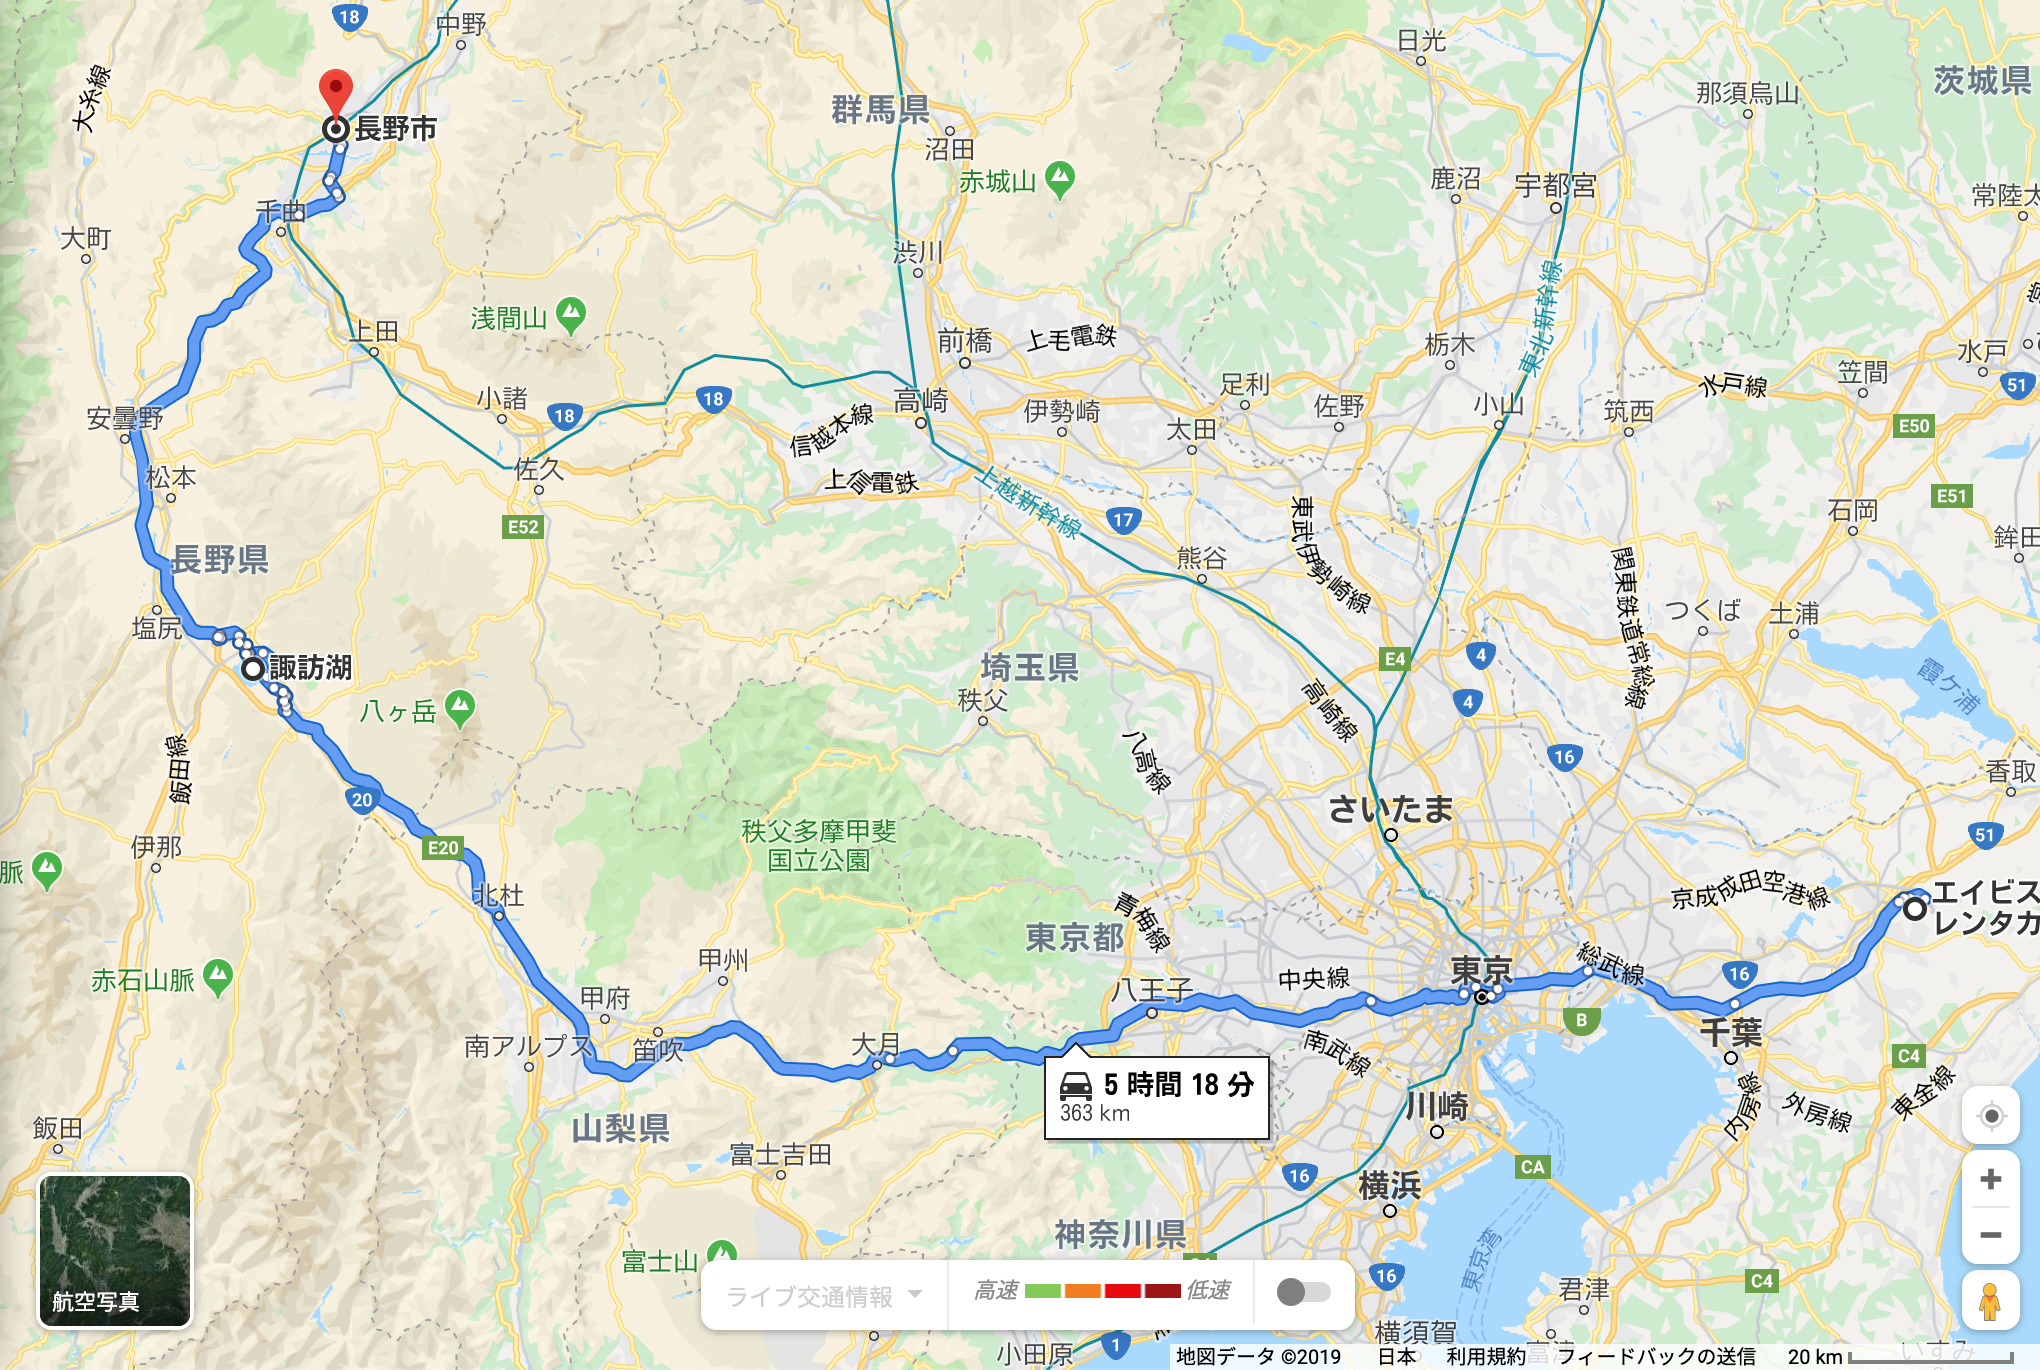 Tokyo to Nagano